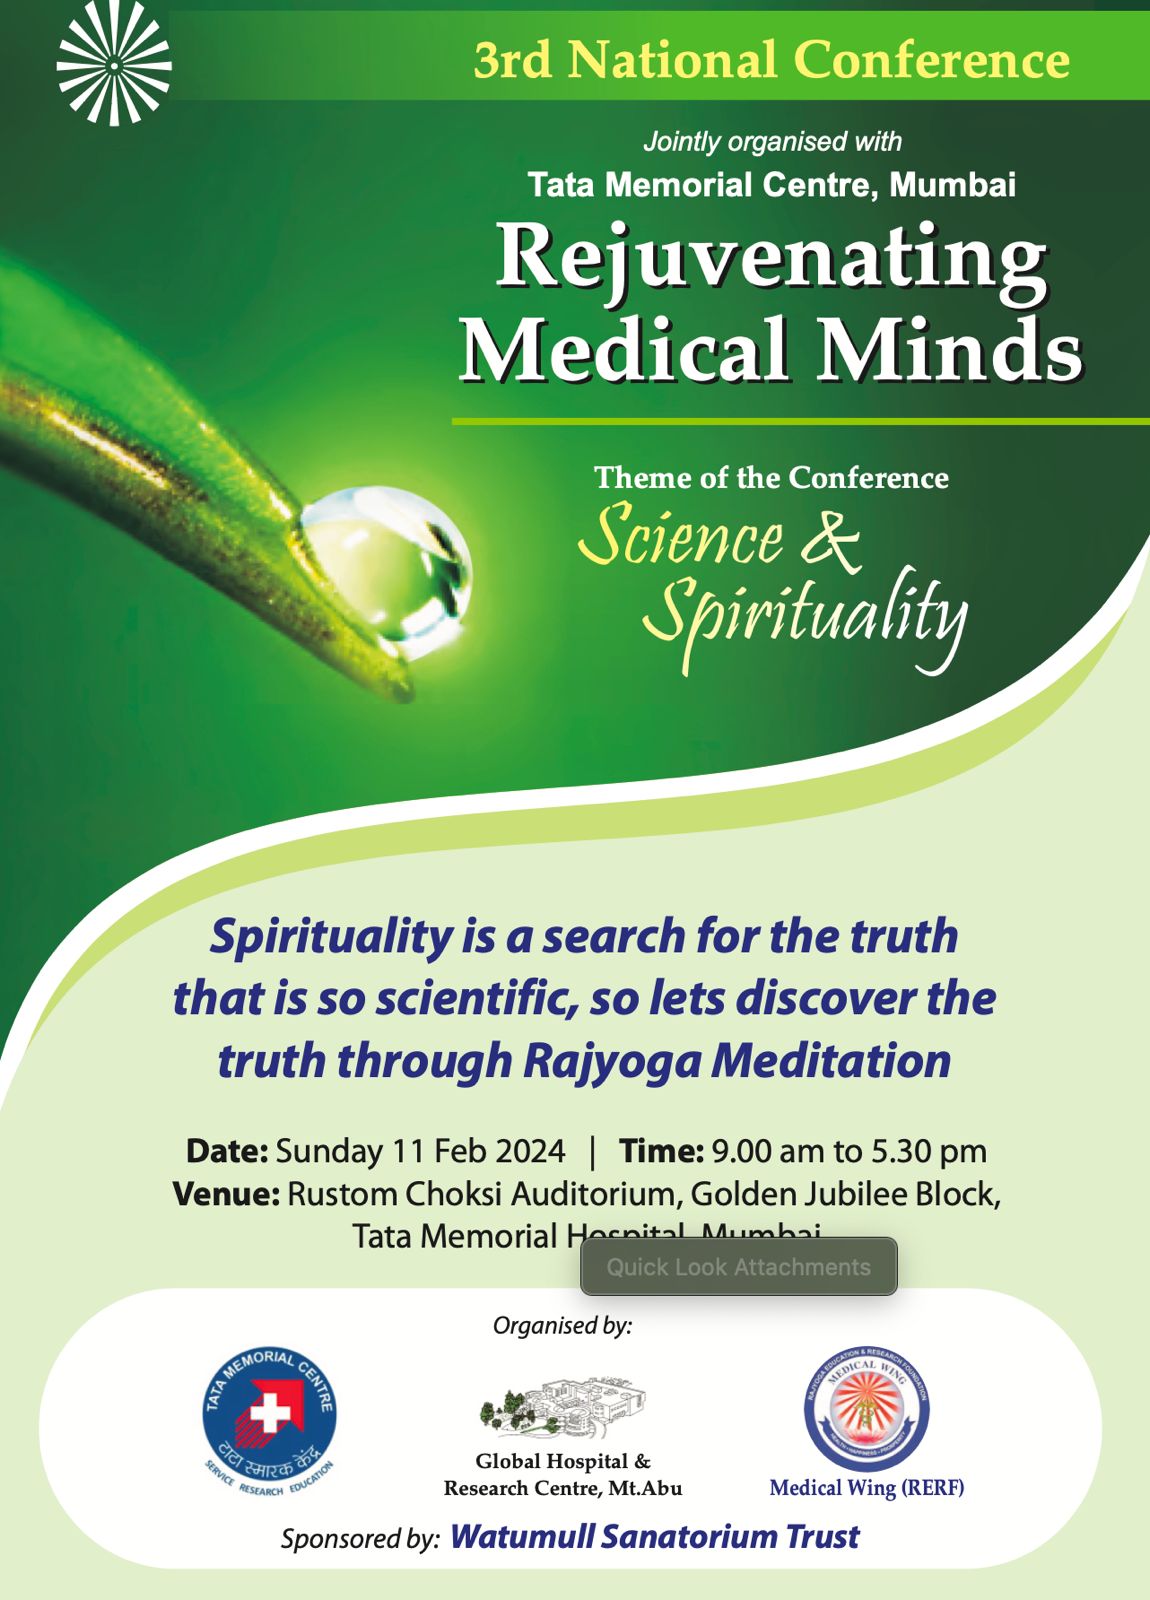 3rd national conference on “rejuvenating medical minds”